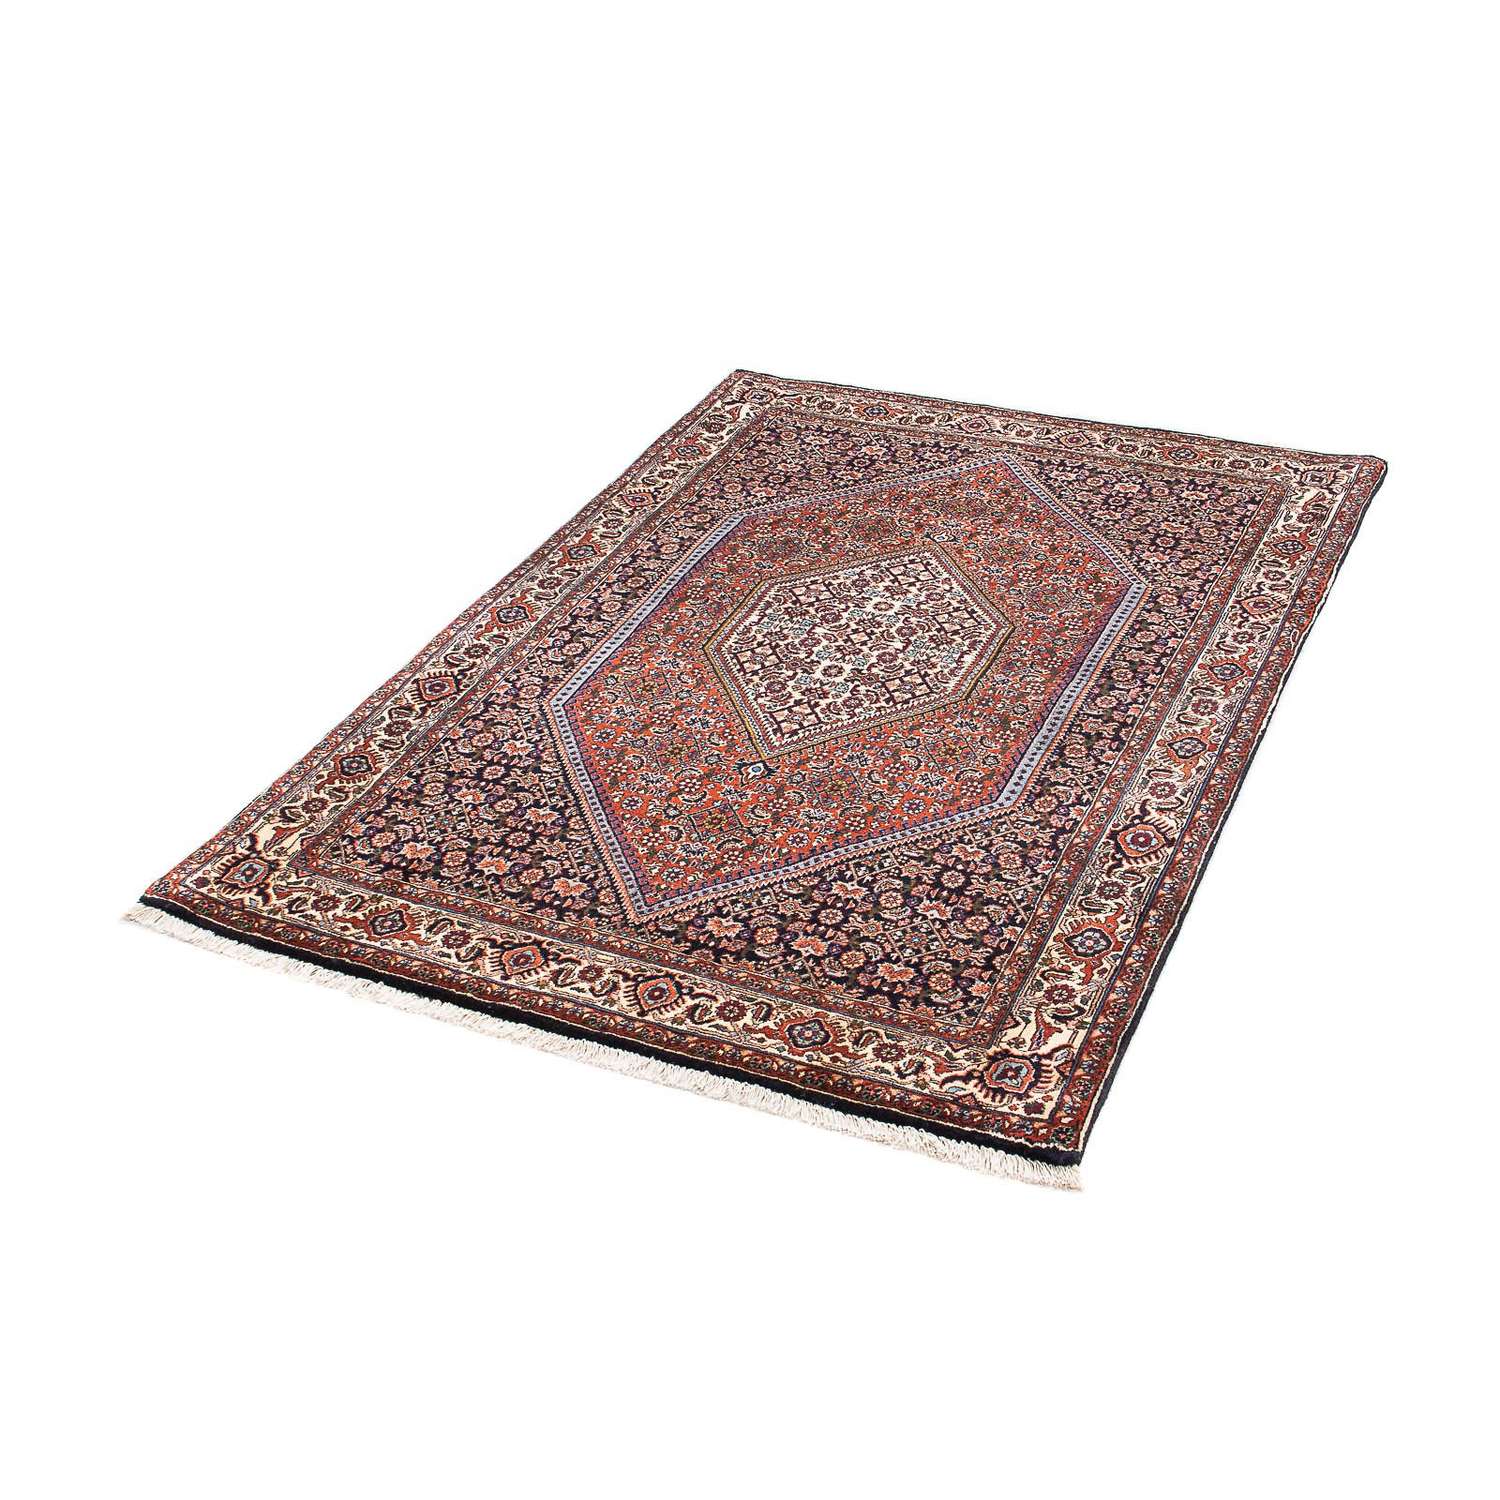 Perzisch tapijt - Bijar - 153 x 105 cm - donkerblauw